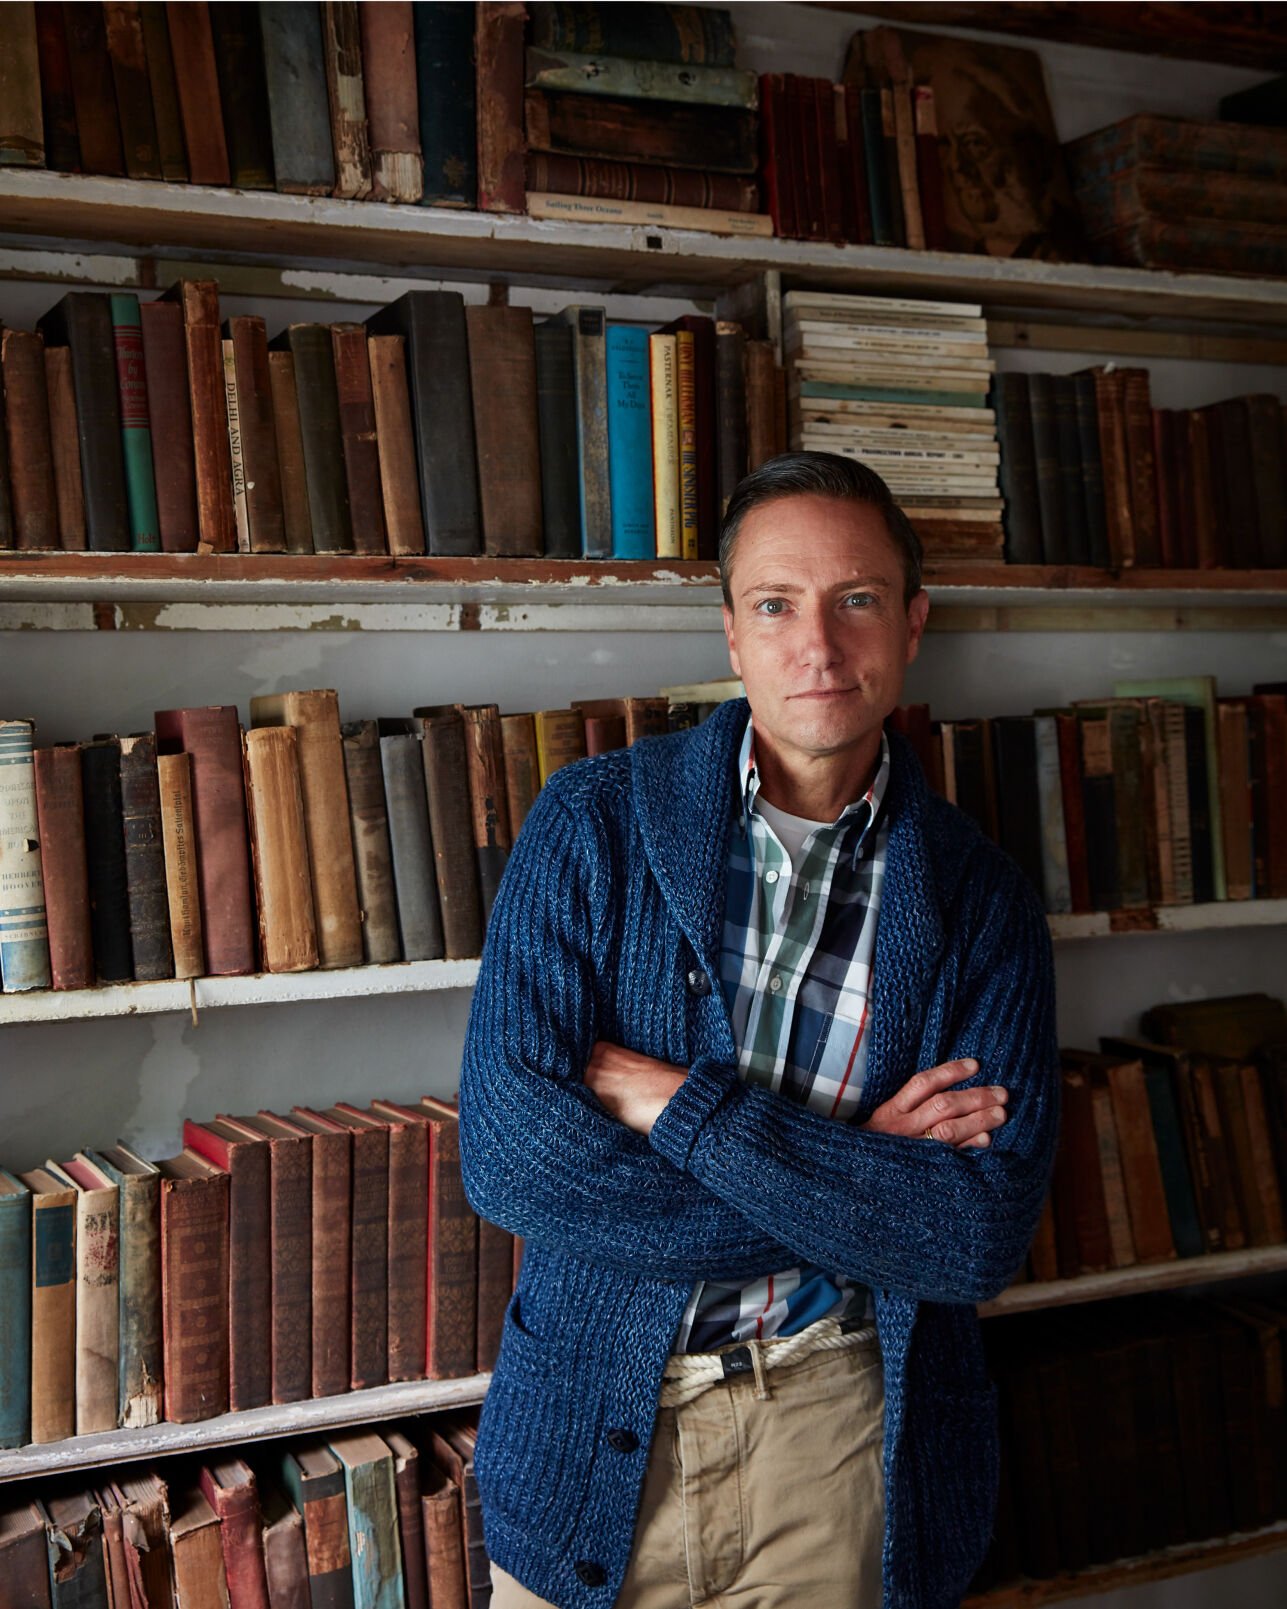 Ken Fulk in front of bookshelf